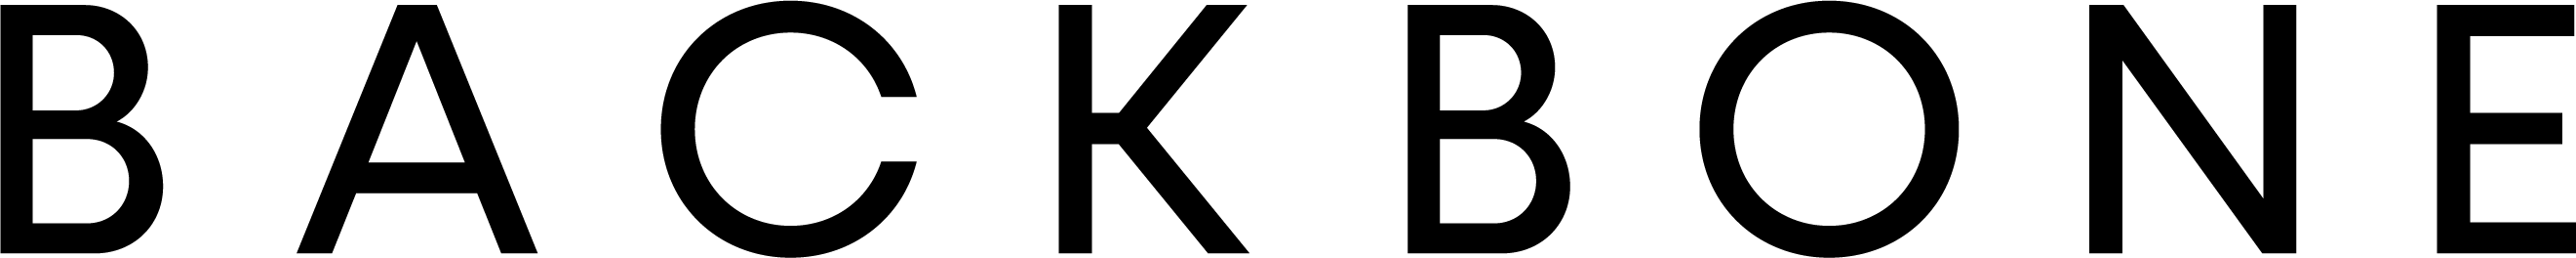 backbone logo zwart